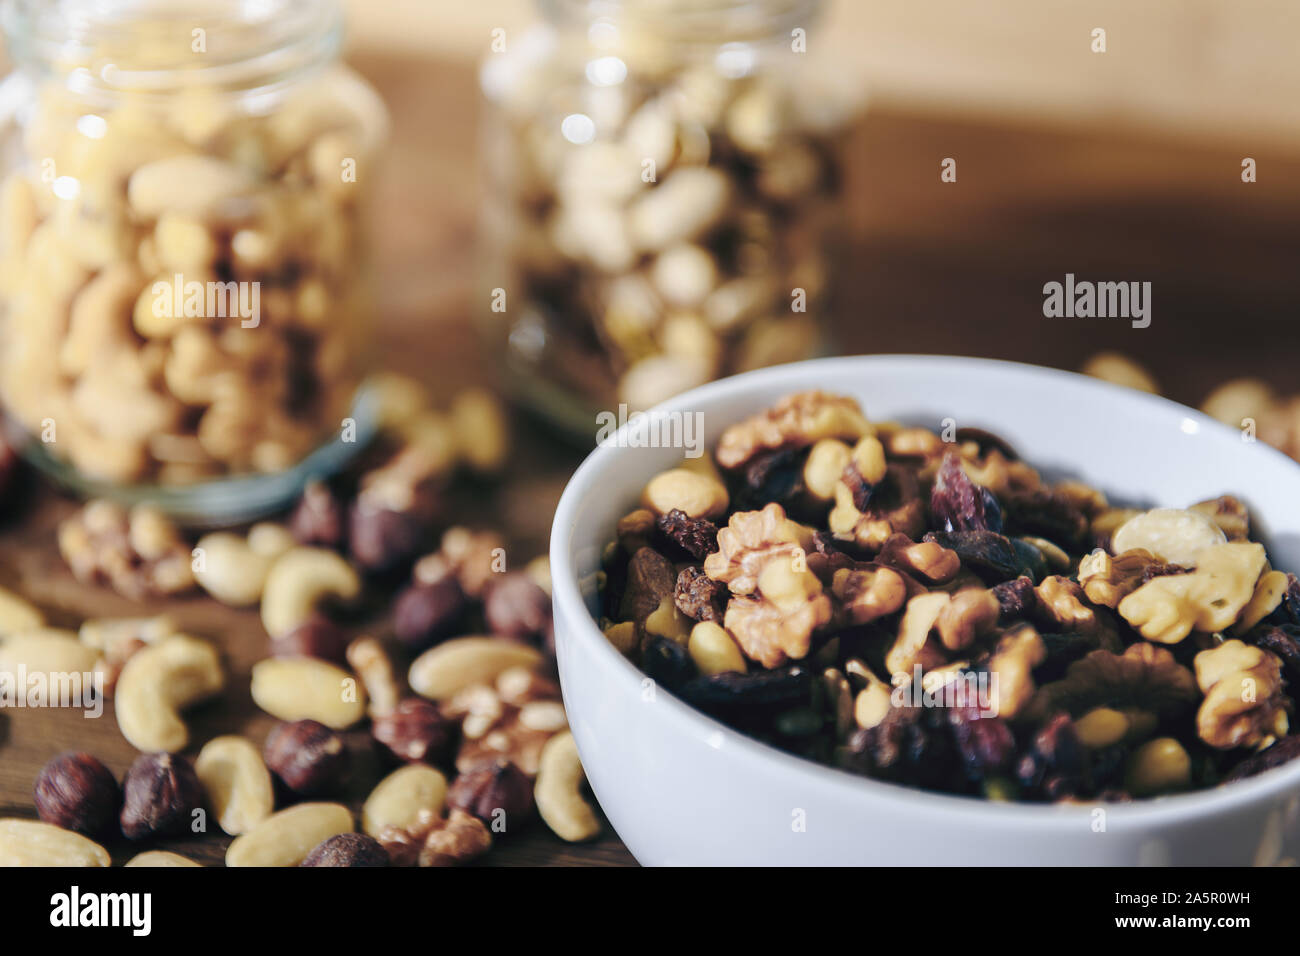 Weiße Schüssel mit abwechslungsreichen Bio Trockenfrüchte und Gläser mit gemischten Nüssen im Hintergrund auf rustikalen Holztisch, gesunde Speisen und Snacks - Konzept, c Stockfoto